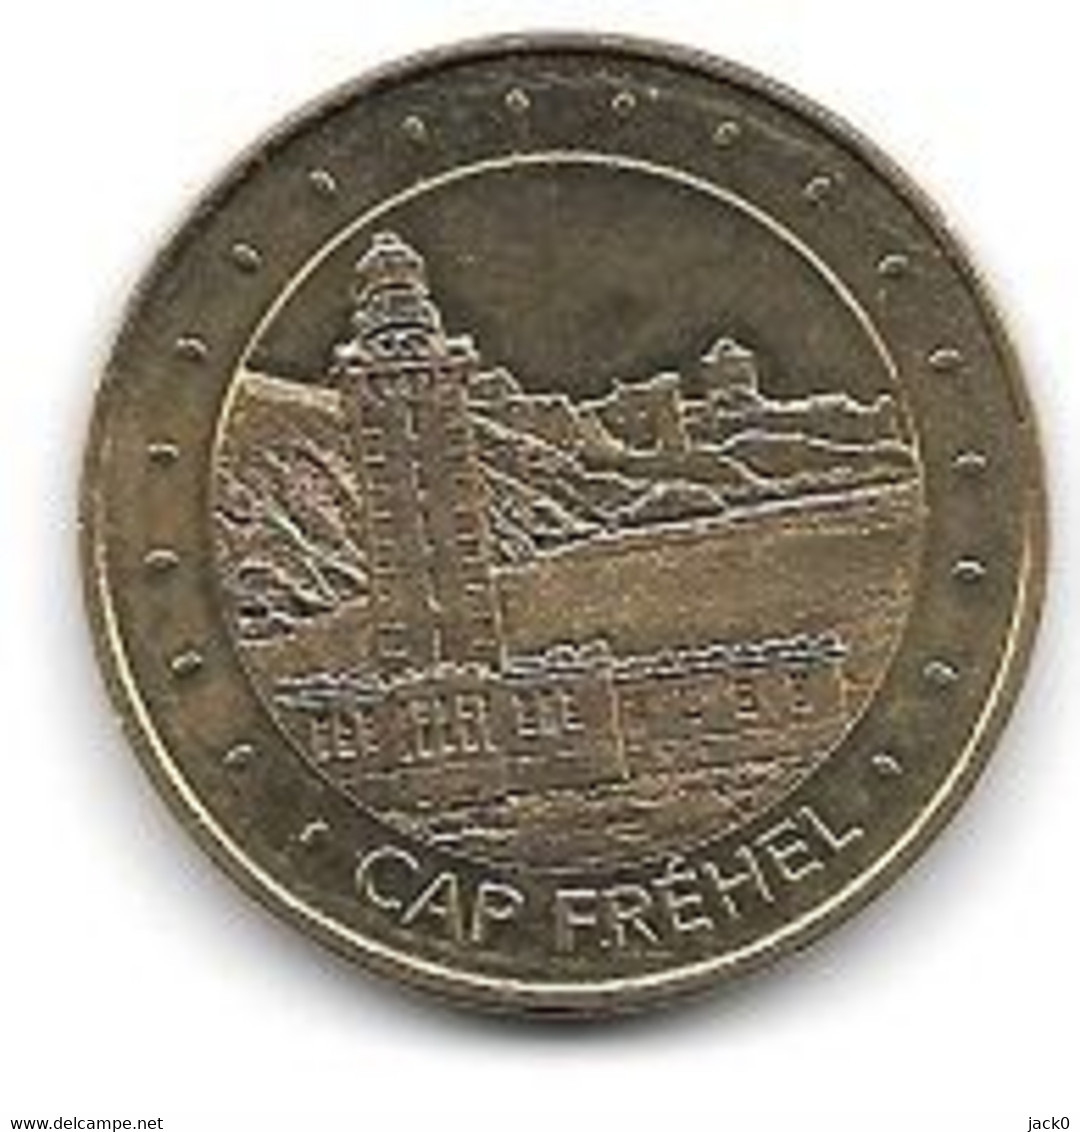 Médaille Touristique  2018, Ville  FREHEL, CAP  FREHEL  ( 22 ) - 2018